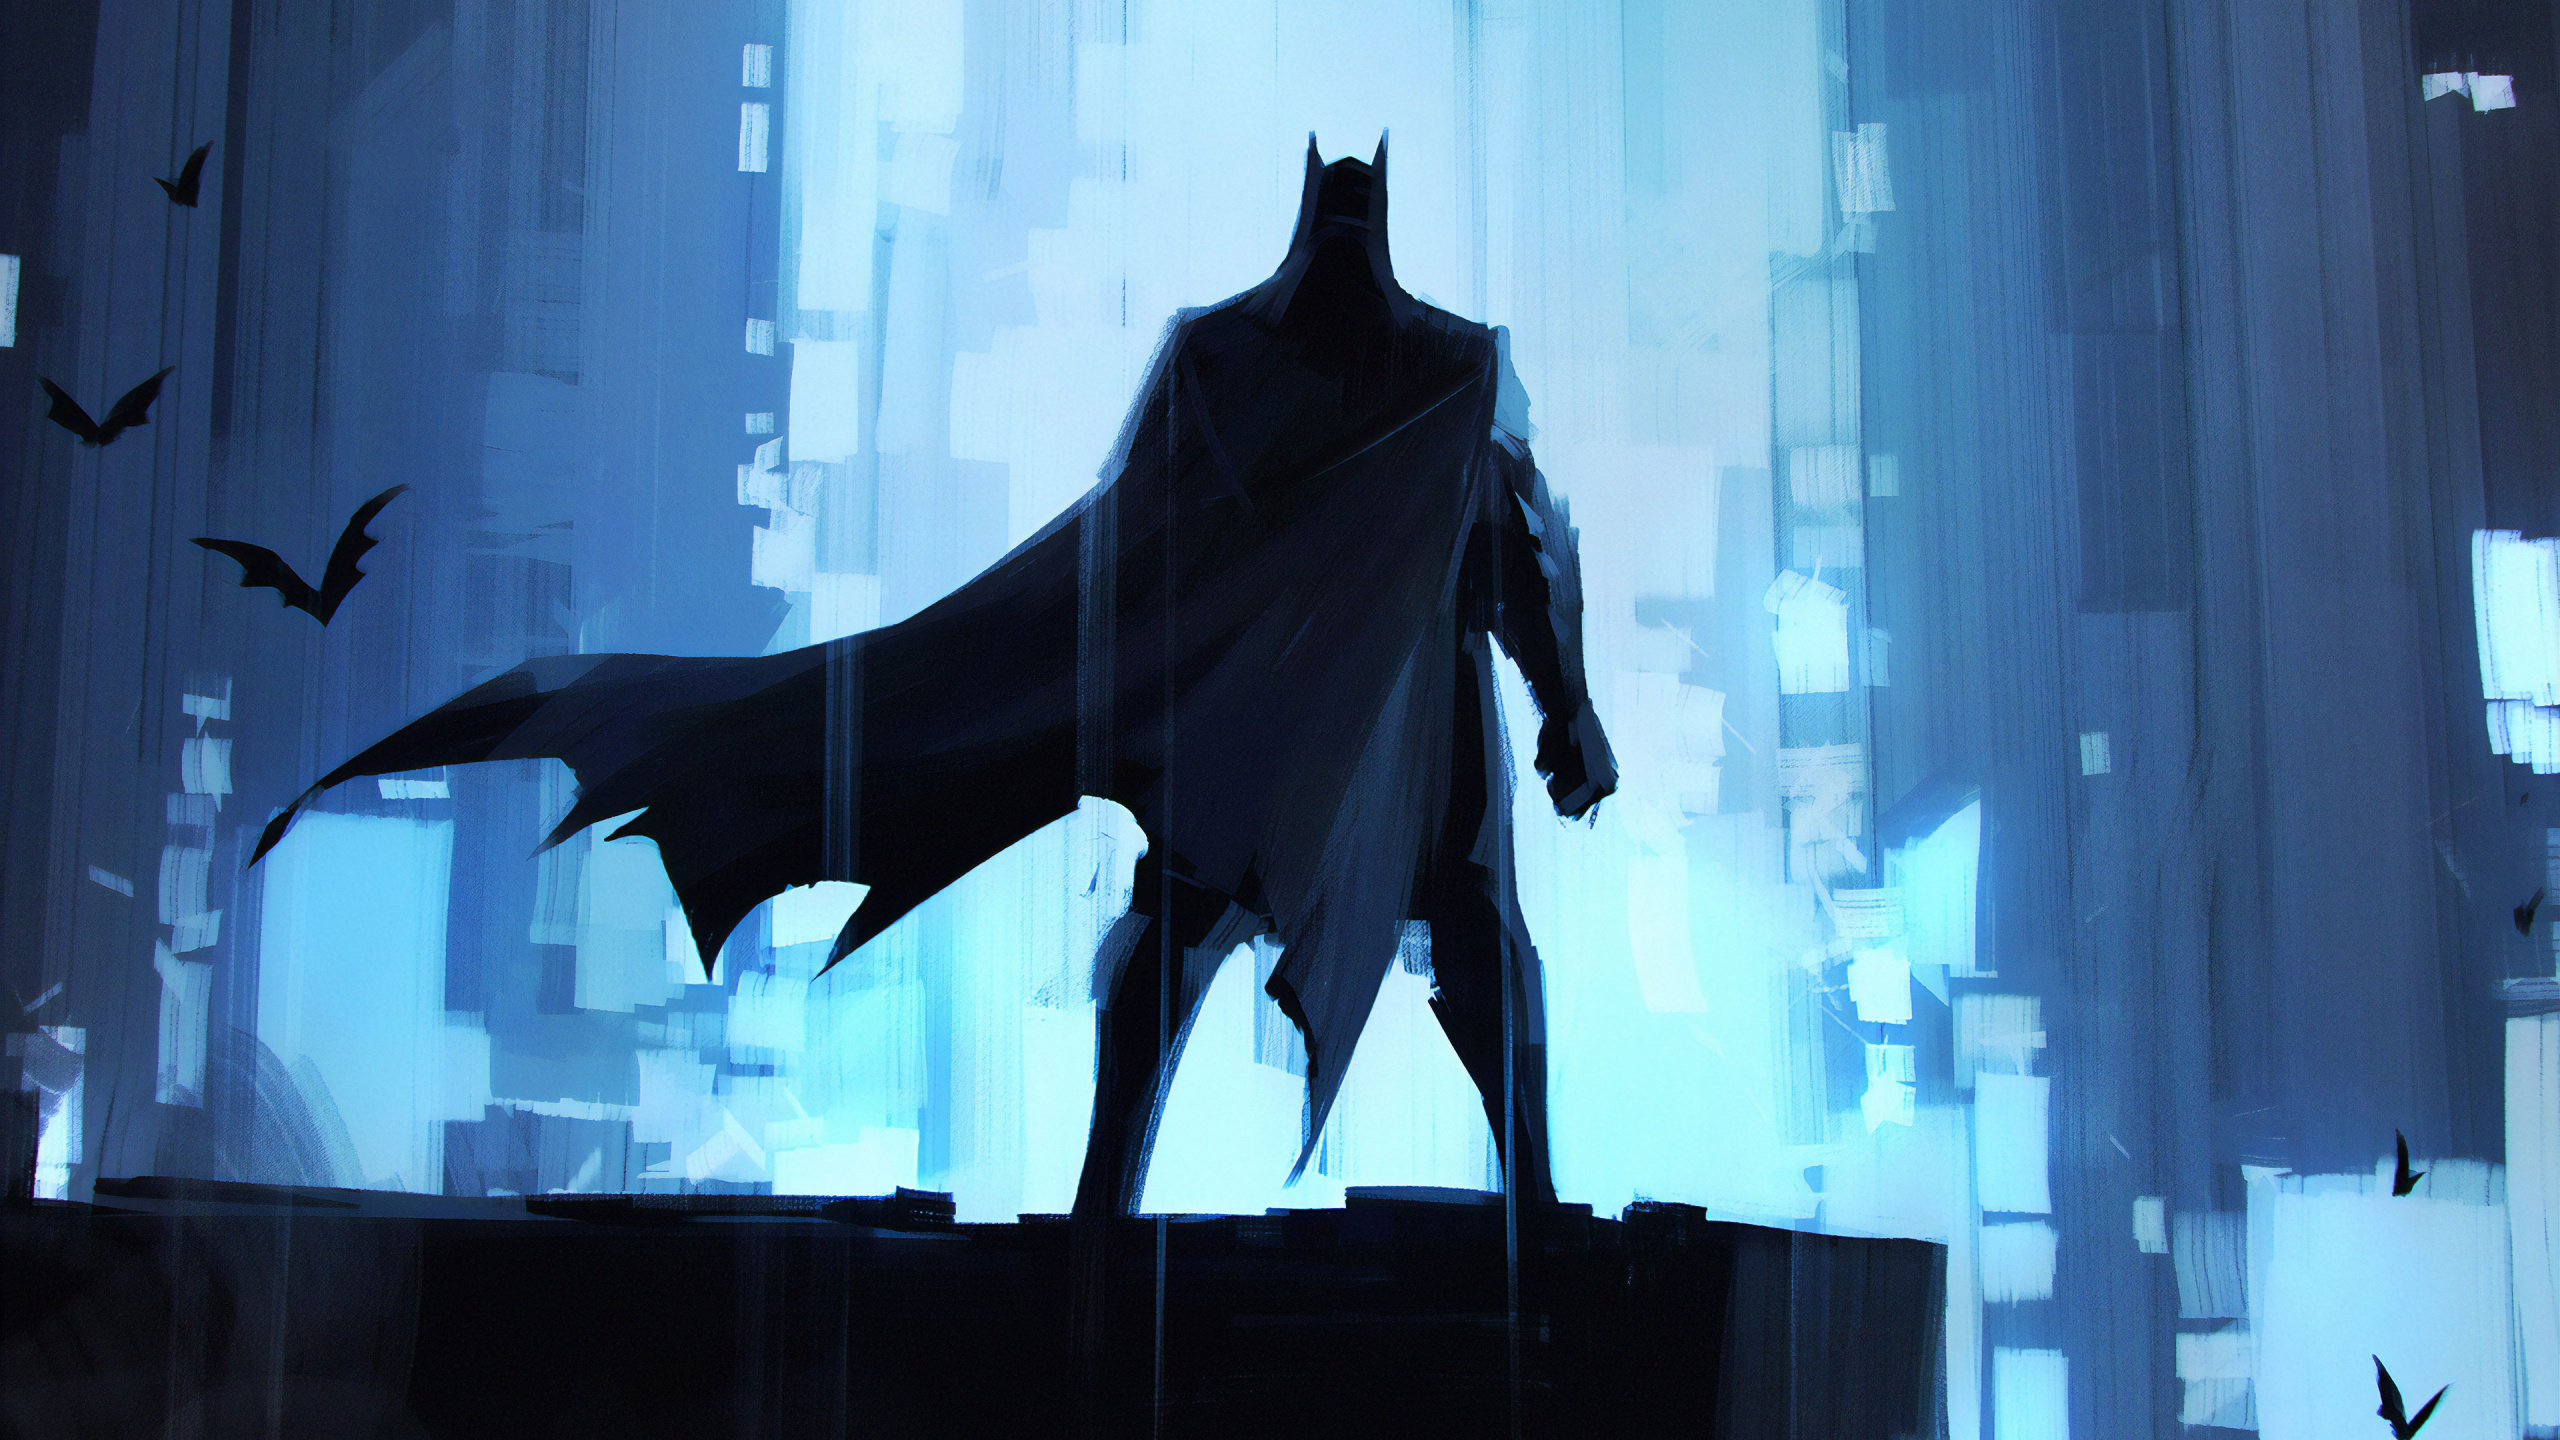 蝙蝠侠, 艺术, Dc漫画, 超级英雄, 正义联盟 壁纸 2560x1440 允许